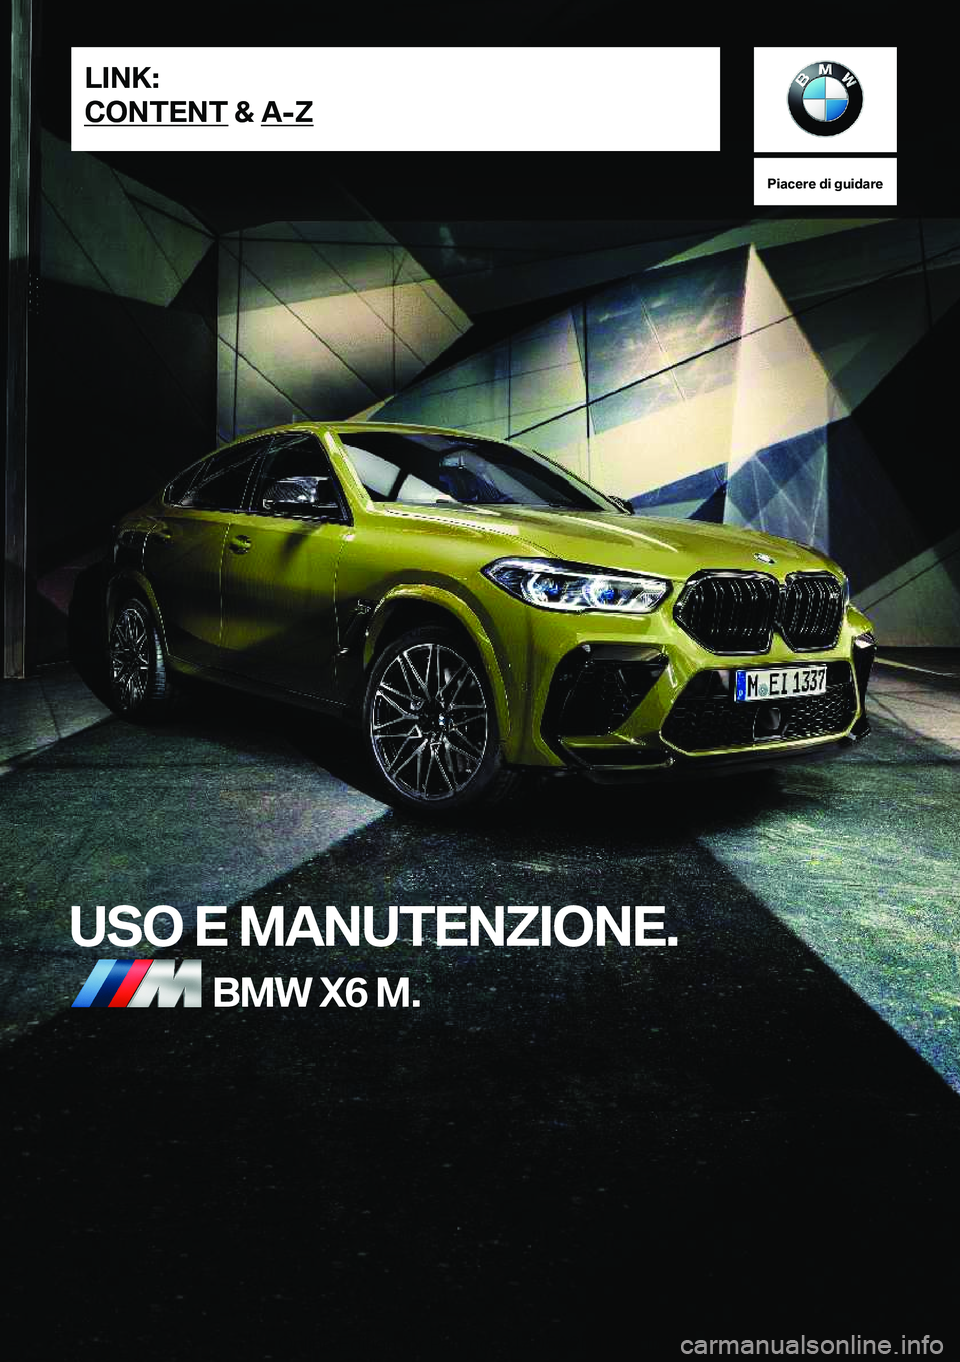 BMW X6 M 2021  Libretti Di Uso E manutenzione (in Italian) �P�i�a�c�e�r�e��d�i��g�u�i�d�a�r�e
�U�S�O��E��M�A�N�U�T�E�N�Z�I�O�N�E�.�B�M�W��X�6��M�.�L�I�N�K�:
�C�O�N�T�E�N�T��&��A�-�Z�O�n�l�i�n�e��E�d�i�t�i�o�n��f�o�r��P�a�r�t��n�o�.��0�1�4�0�5�A�2